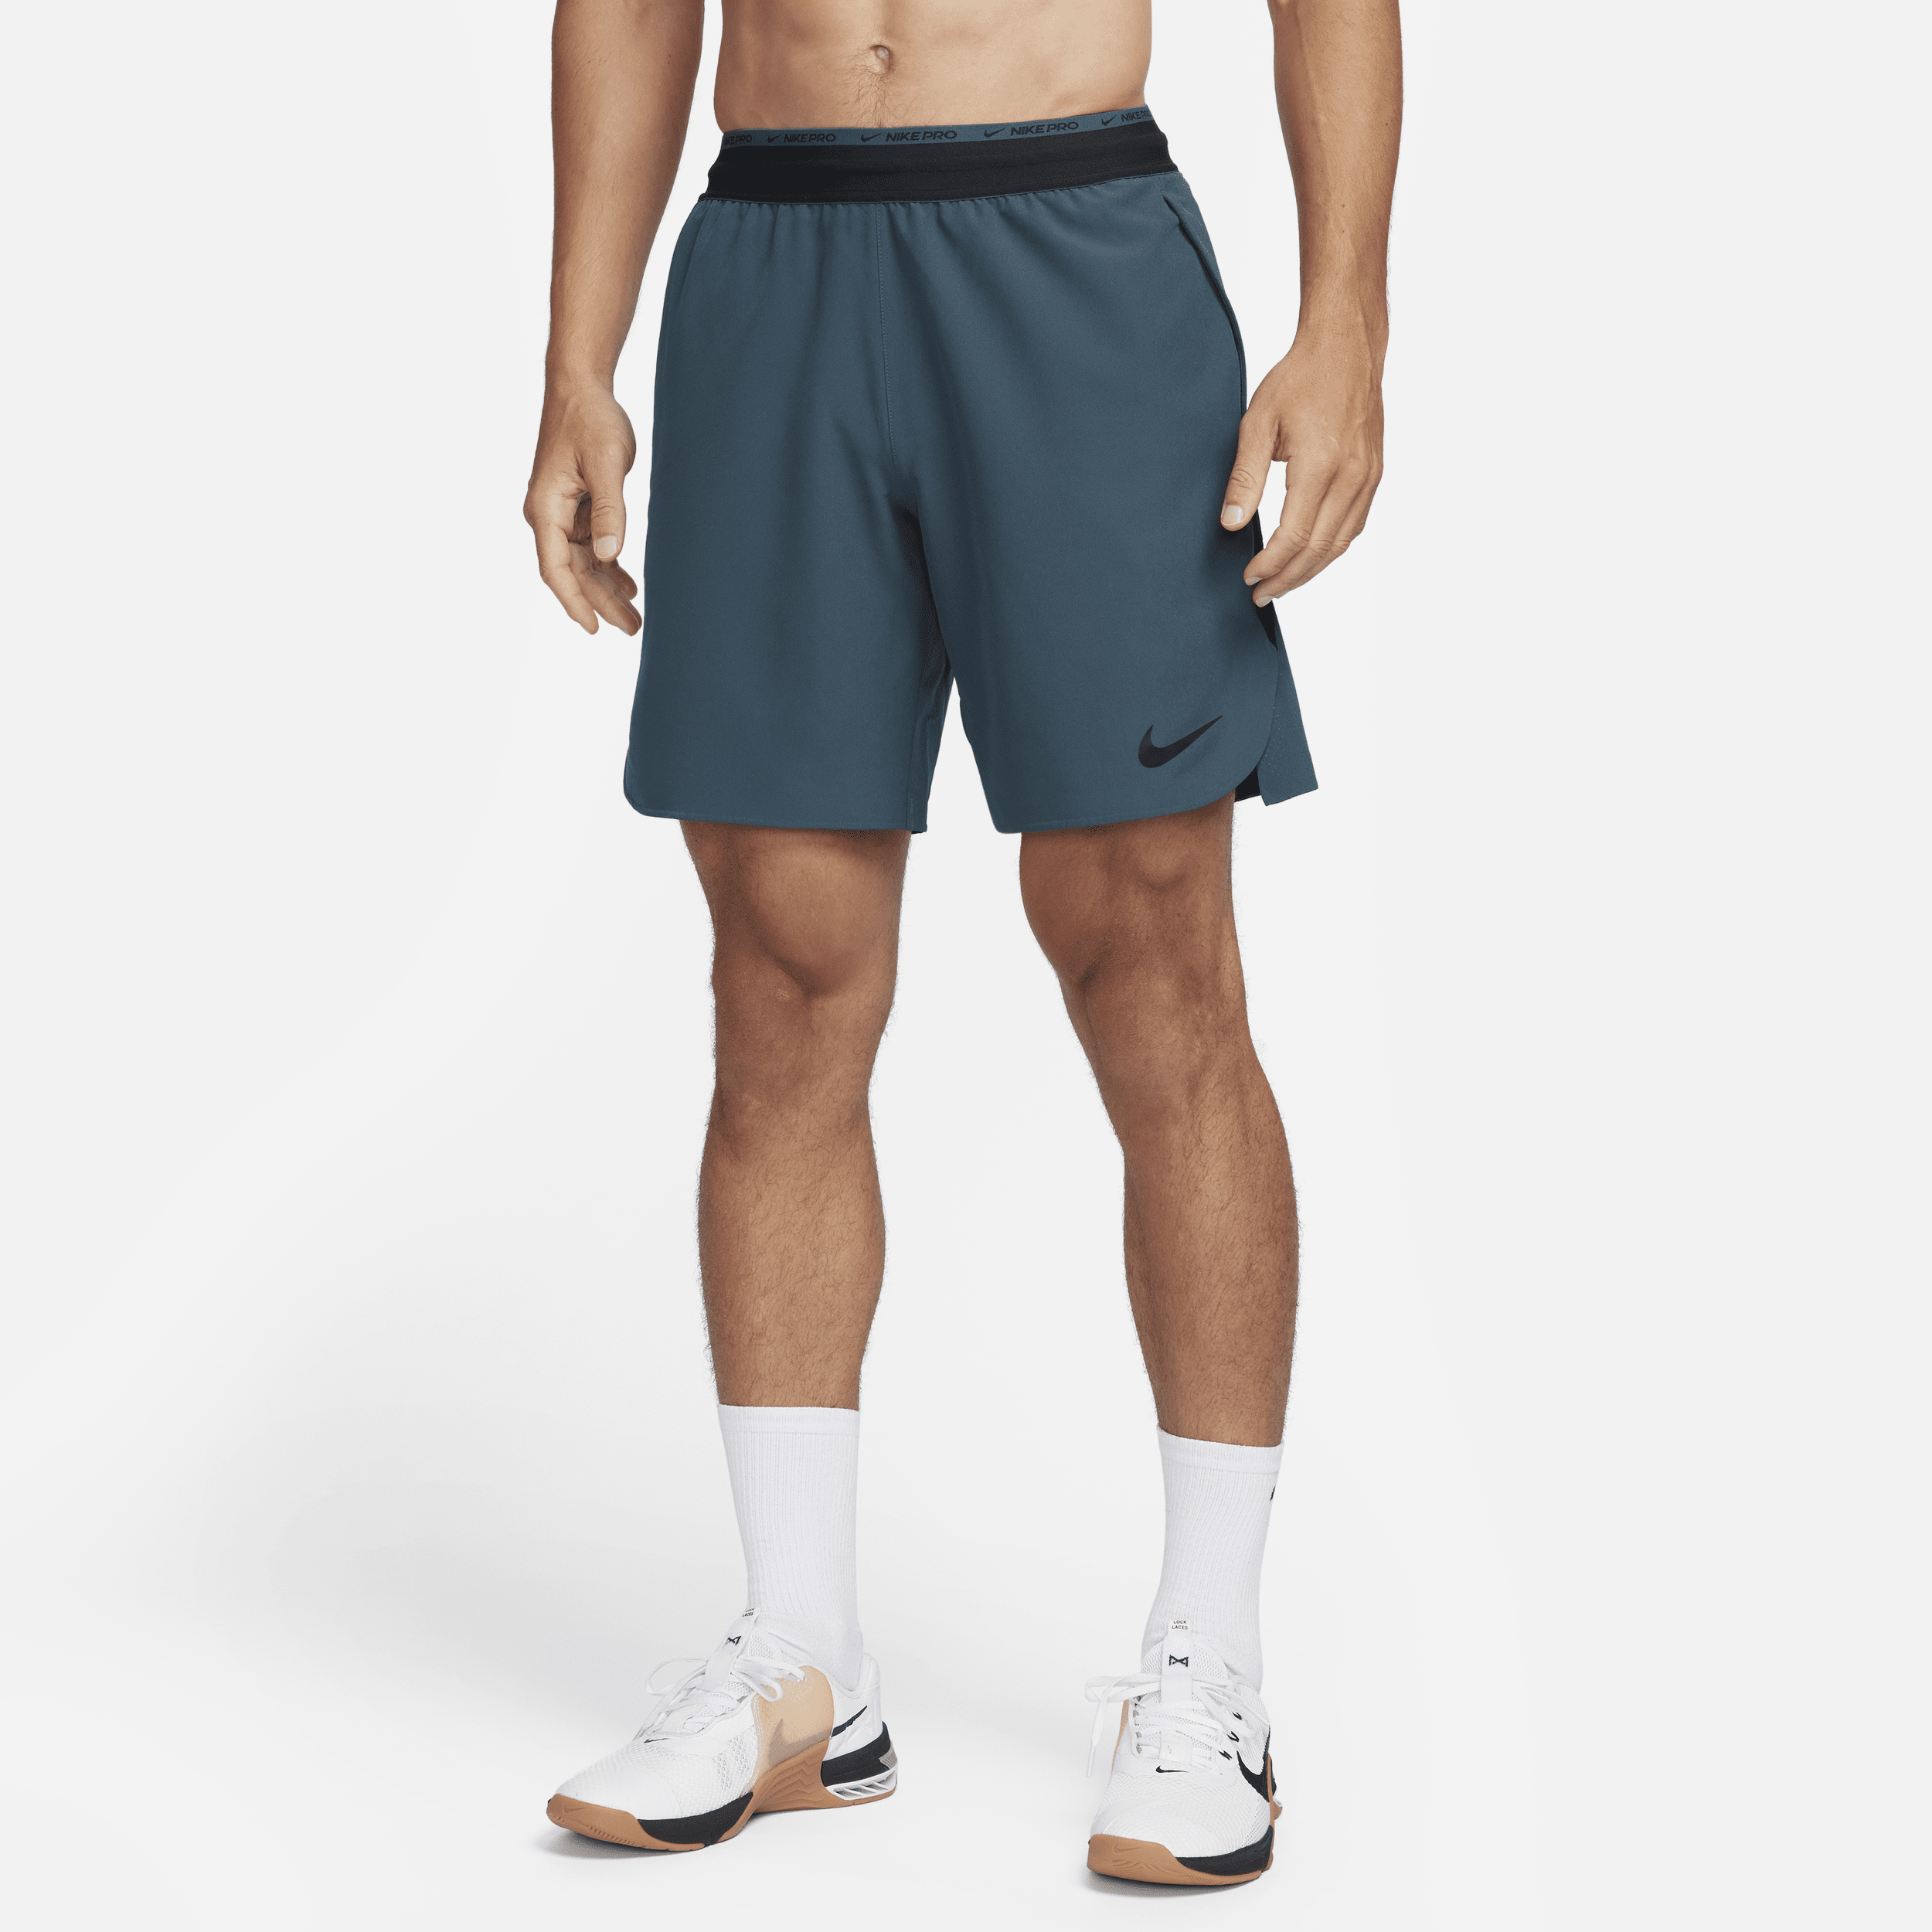 Nike Dri-FIT Flex Rep Pro Collection-træningsshorts (20 cm) uden for til mænd - grøn